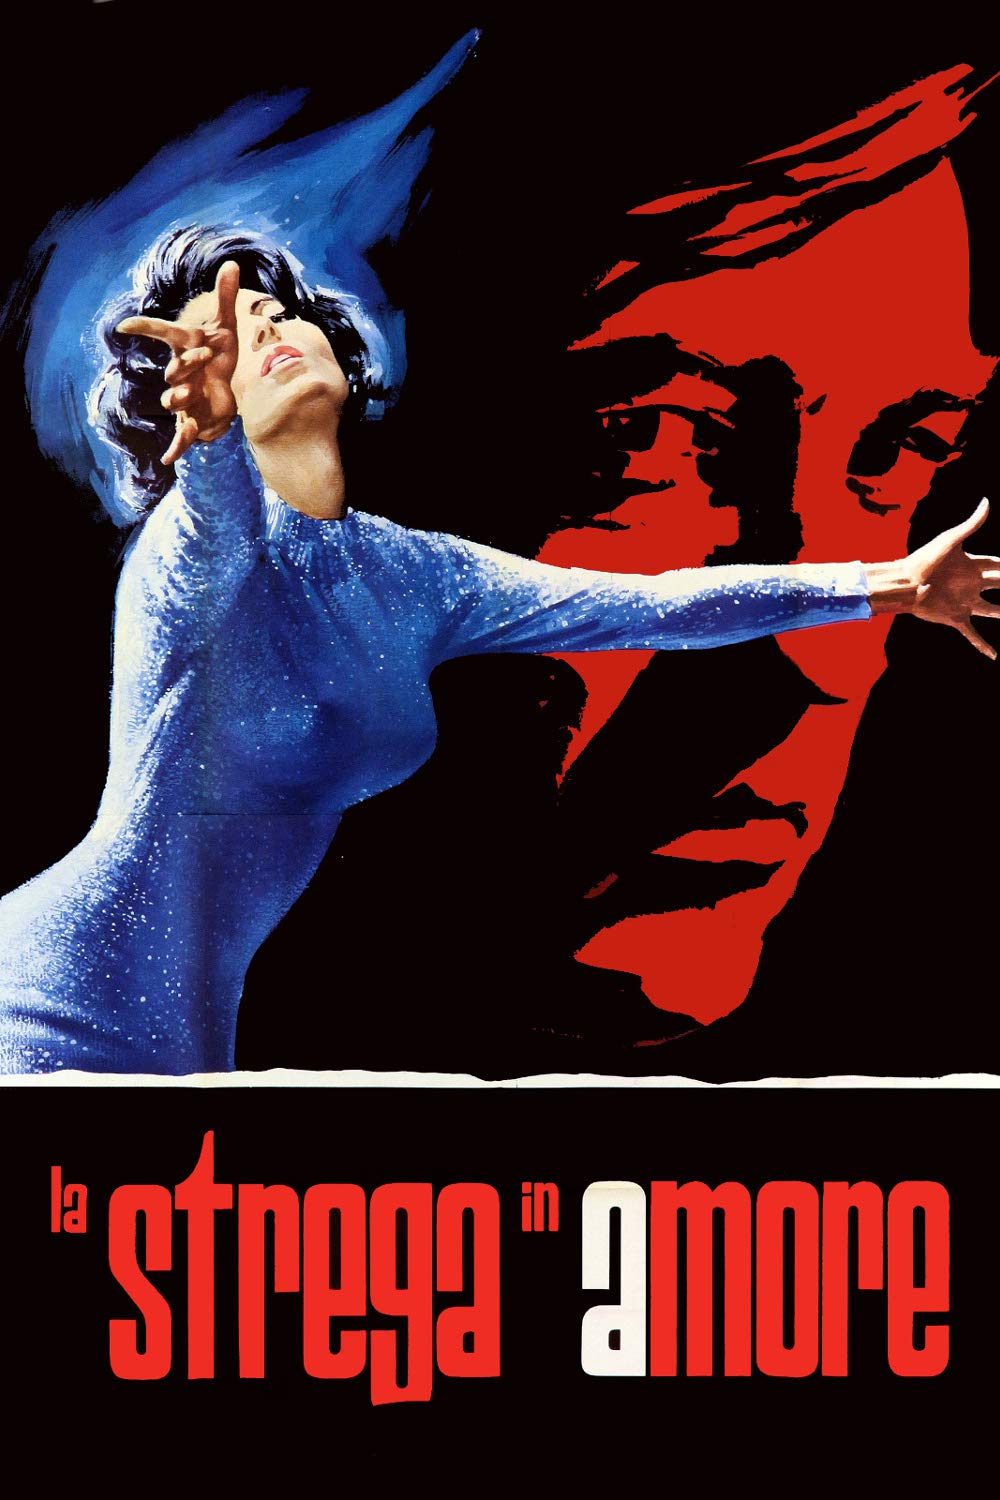 La strega in amore [HD] (1966)